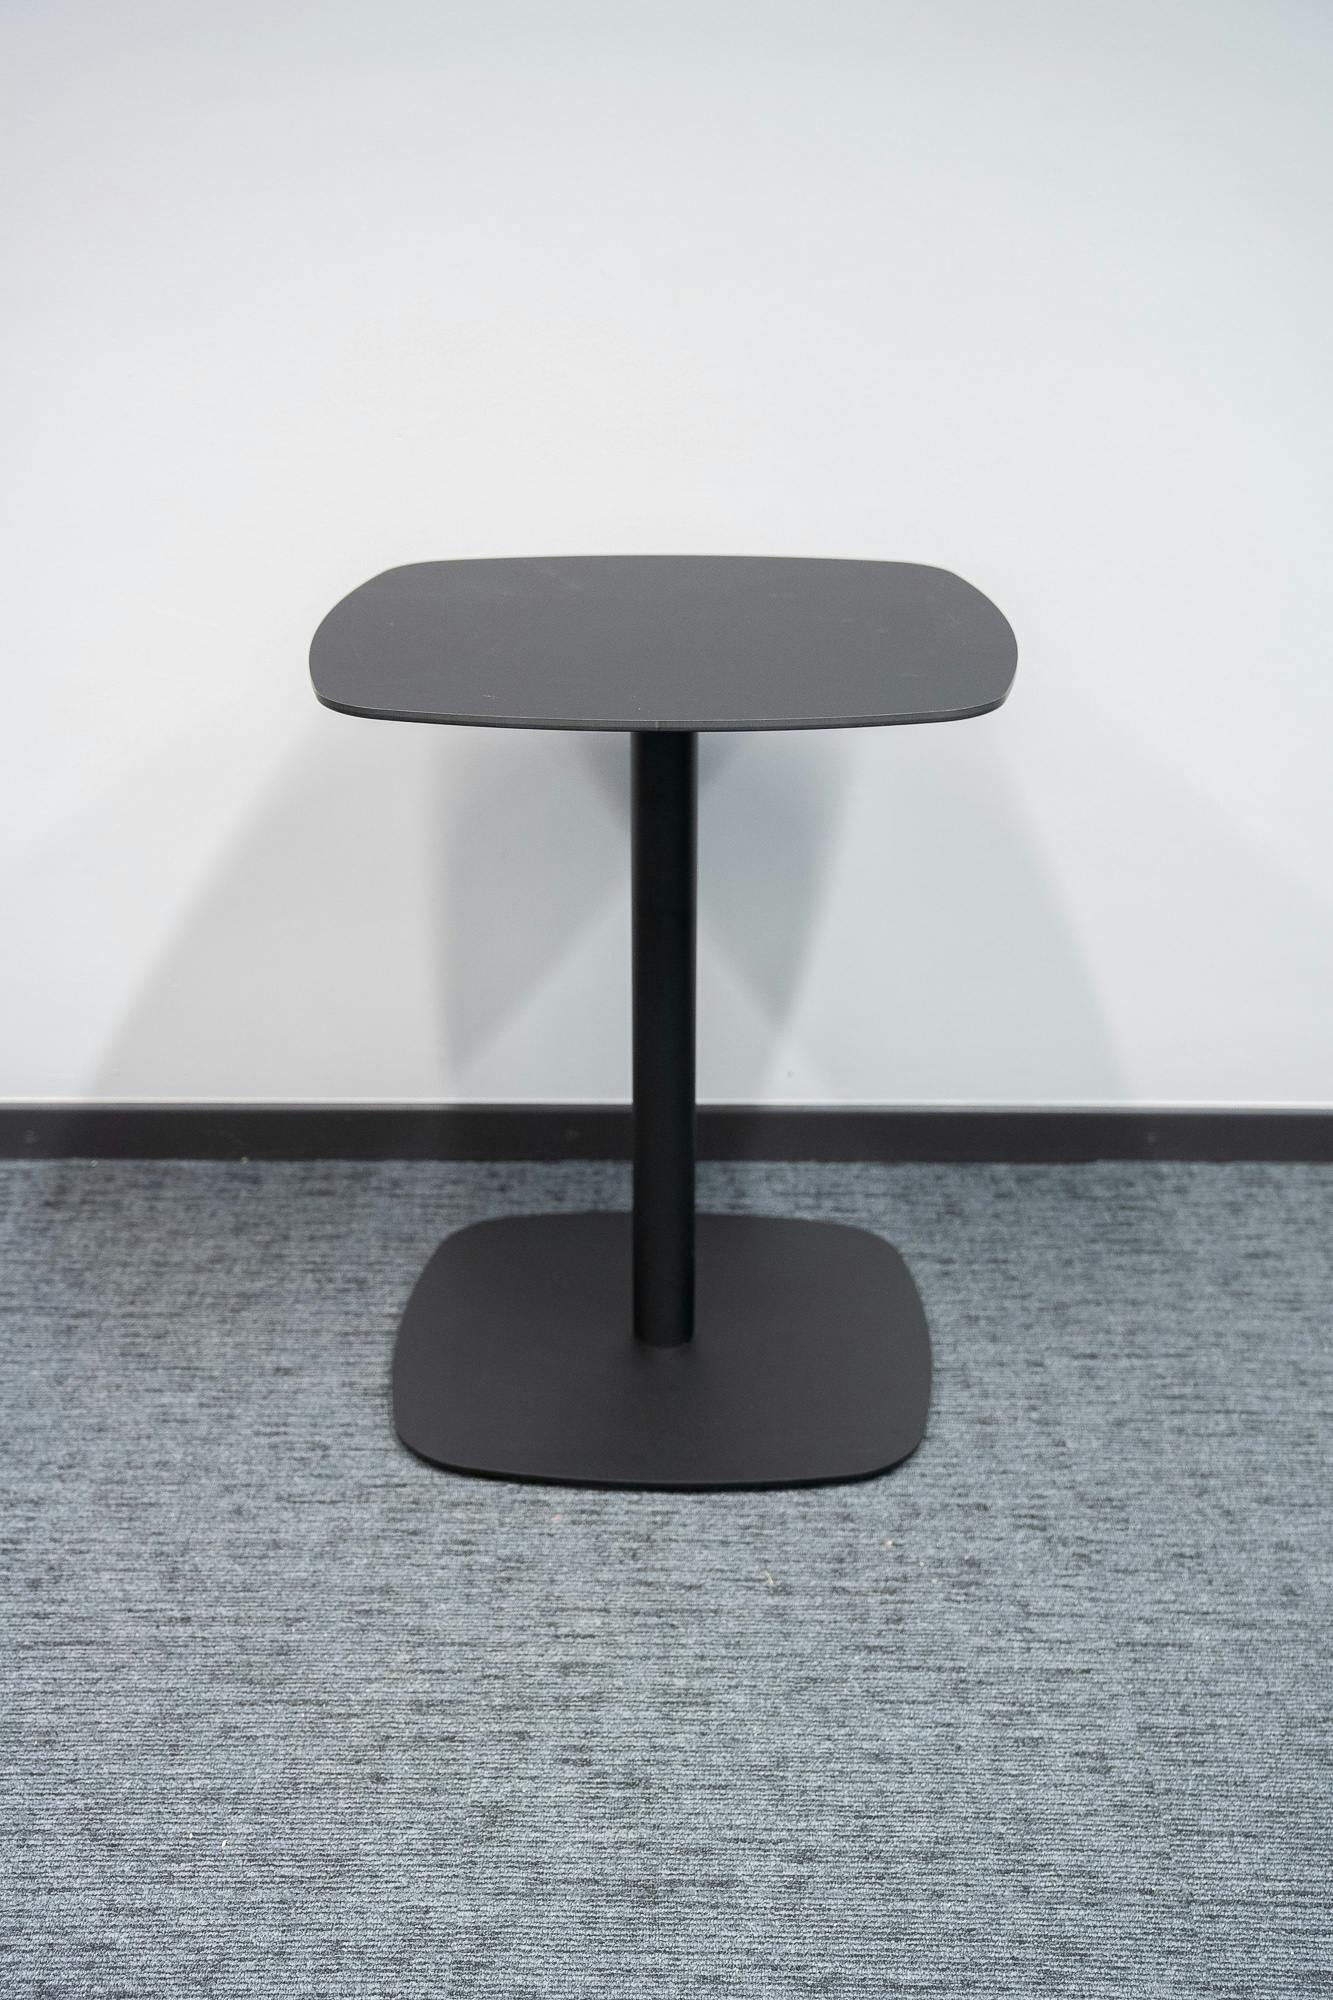 Zwarte vierkante ijzeren tafel ontworpen door Estudi Manel Molina - Relieve Furniture